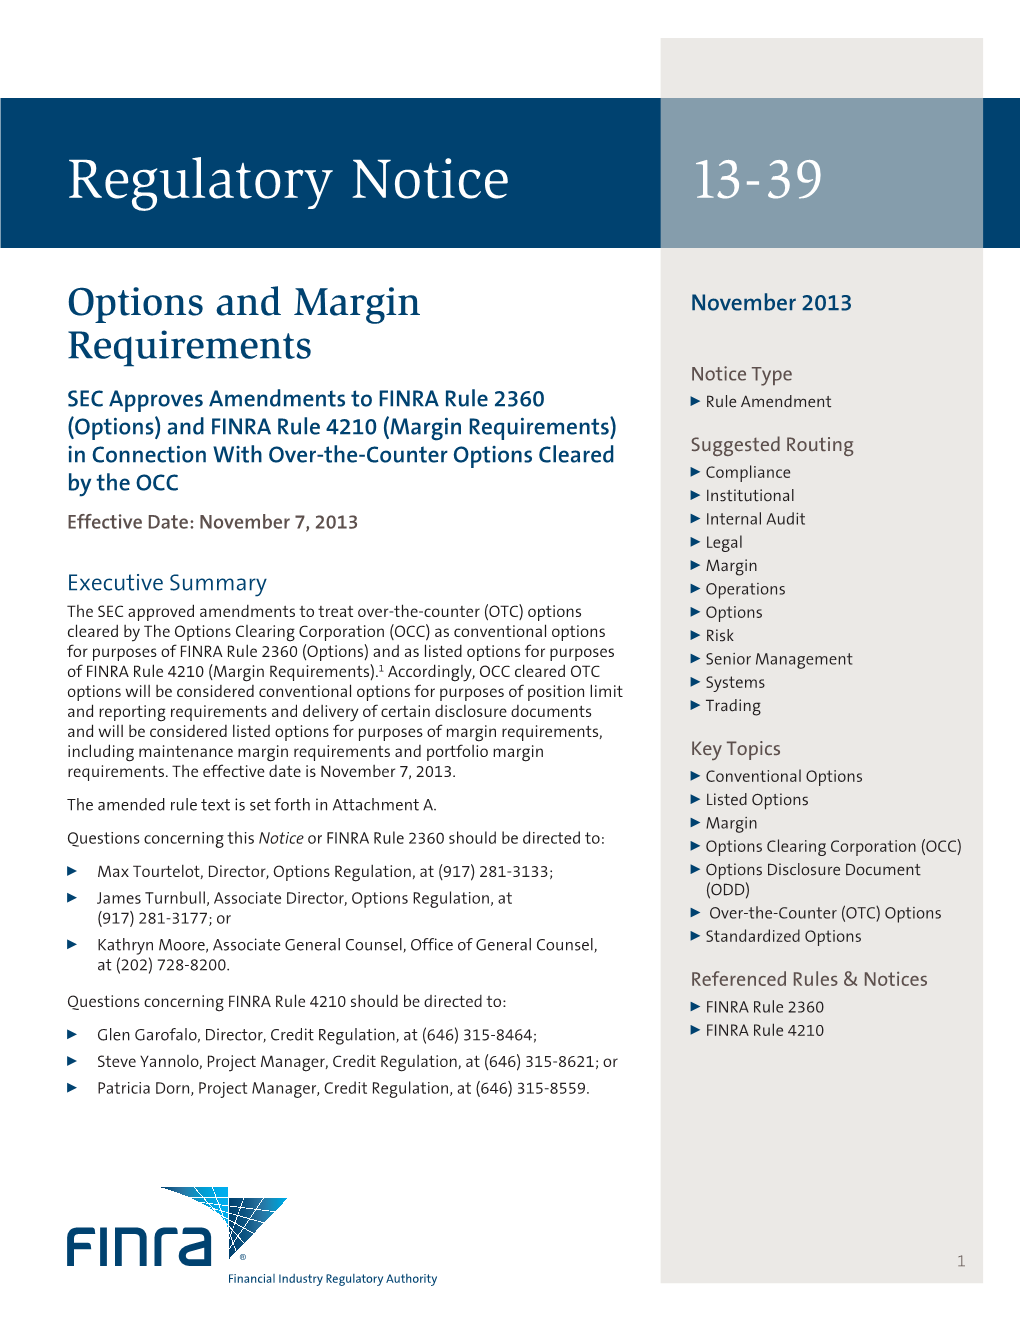 Regulatory Notice 13-39